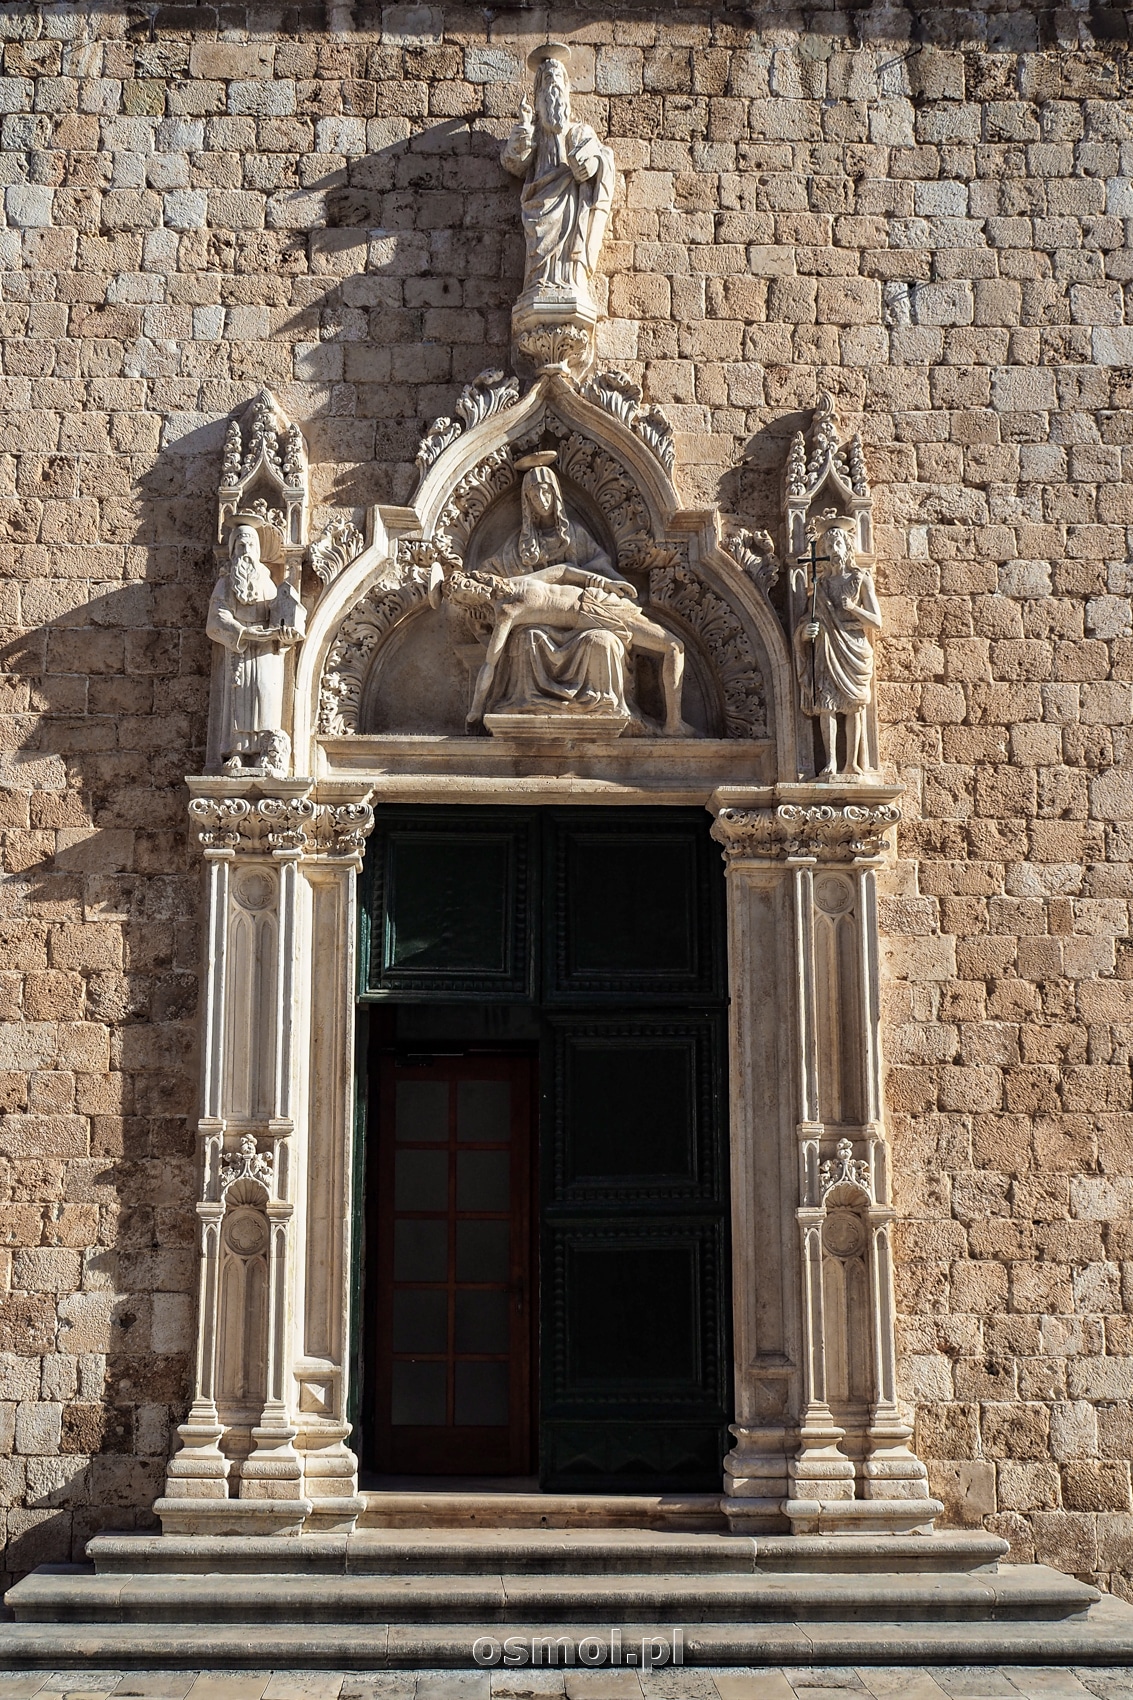 Wejście do kościoła Franciszkanów. Piękny portal jako jeden z nielicznych przetrwał trzęsienie ziemi, które zniszczyło Dubrownik